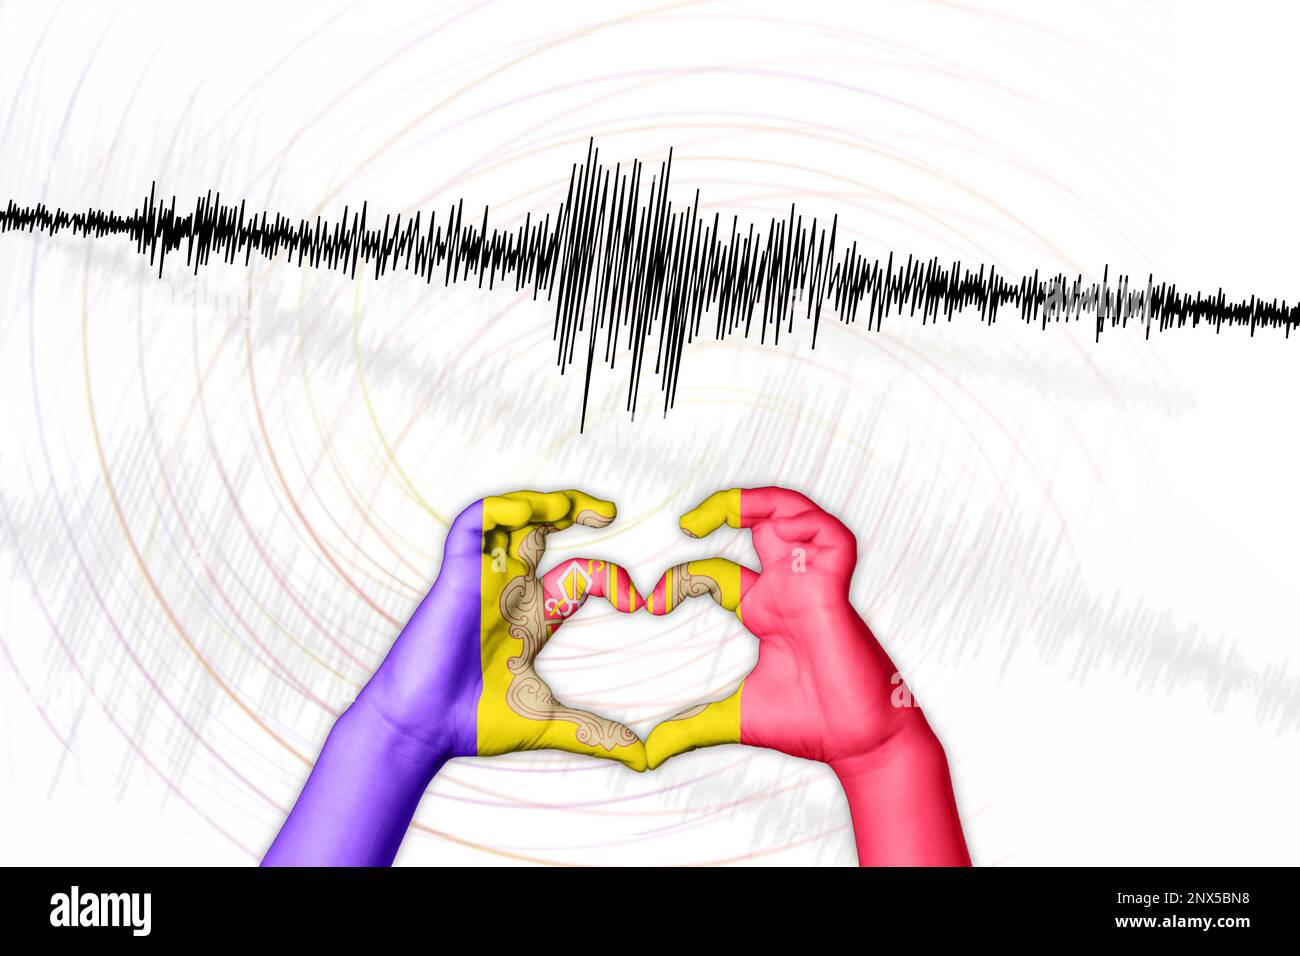 Erdbeben Andorras Symbol der Heart Richter Scale Stockfoto